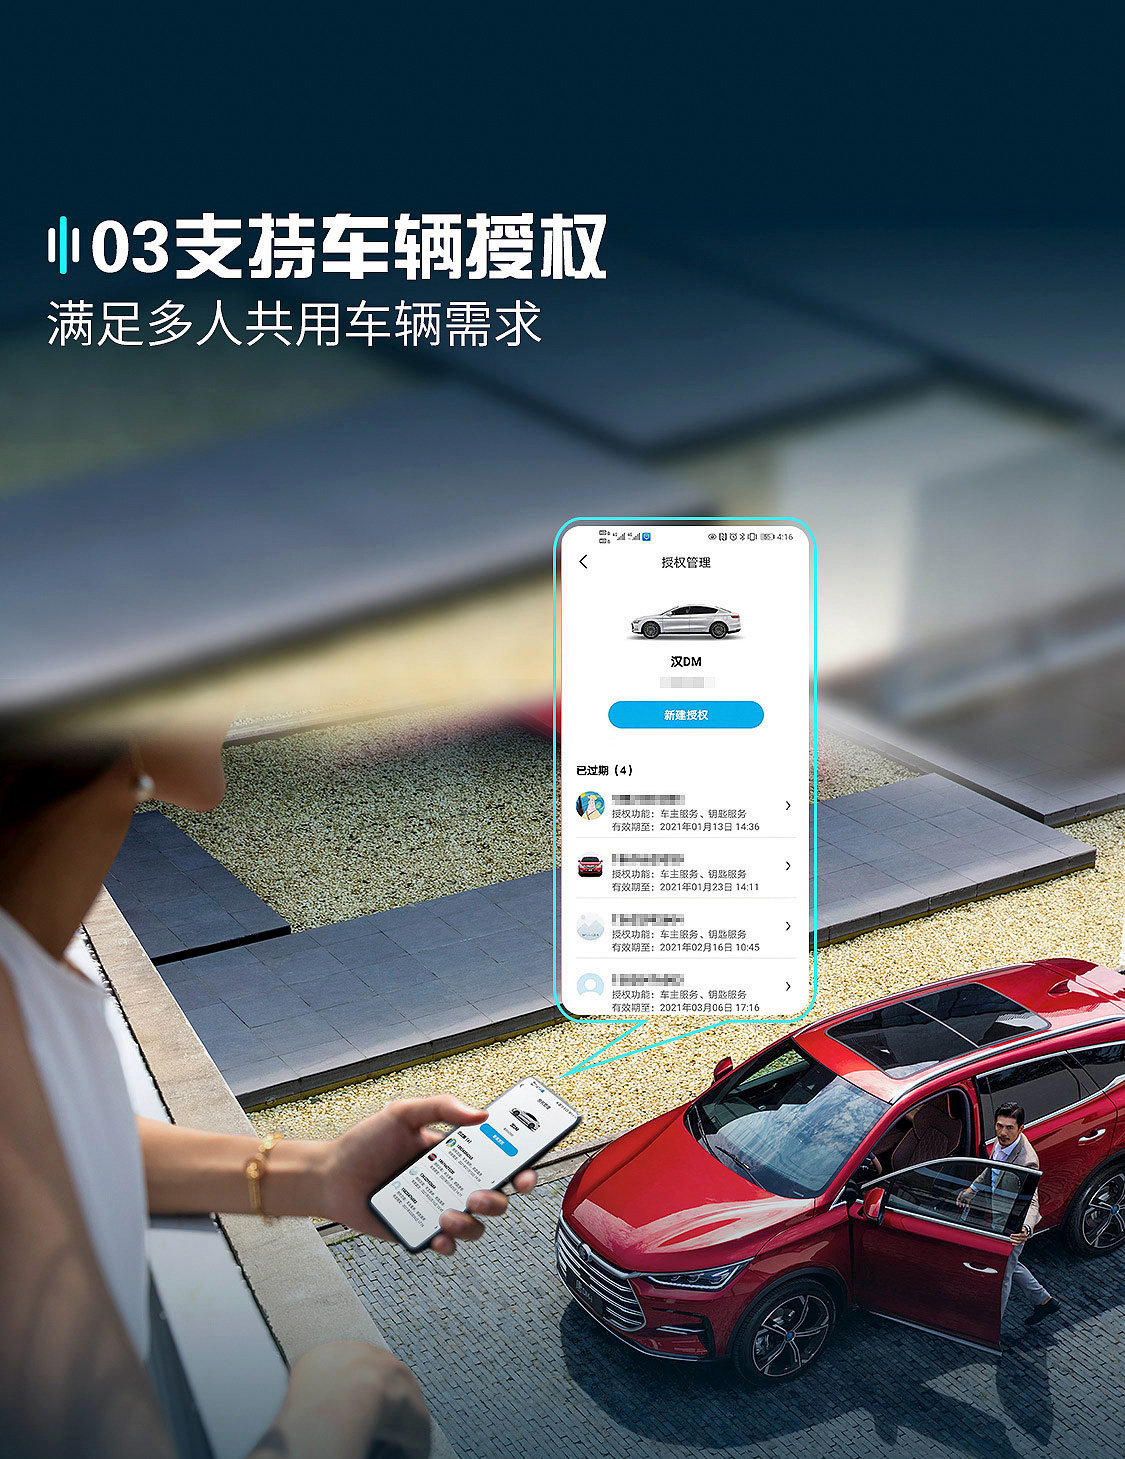 比亚迪汽车App正式上线 一键开启精彩车生活